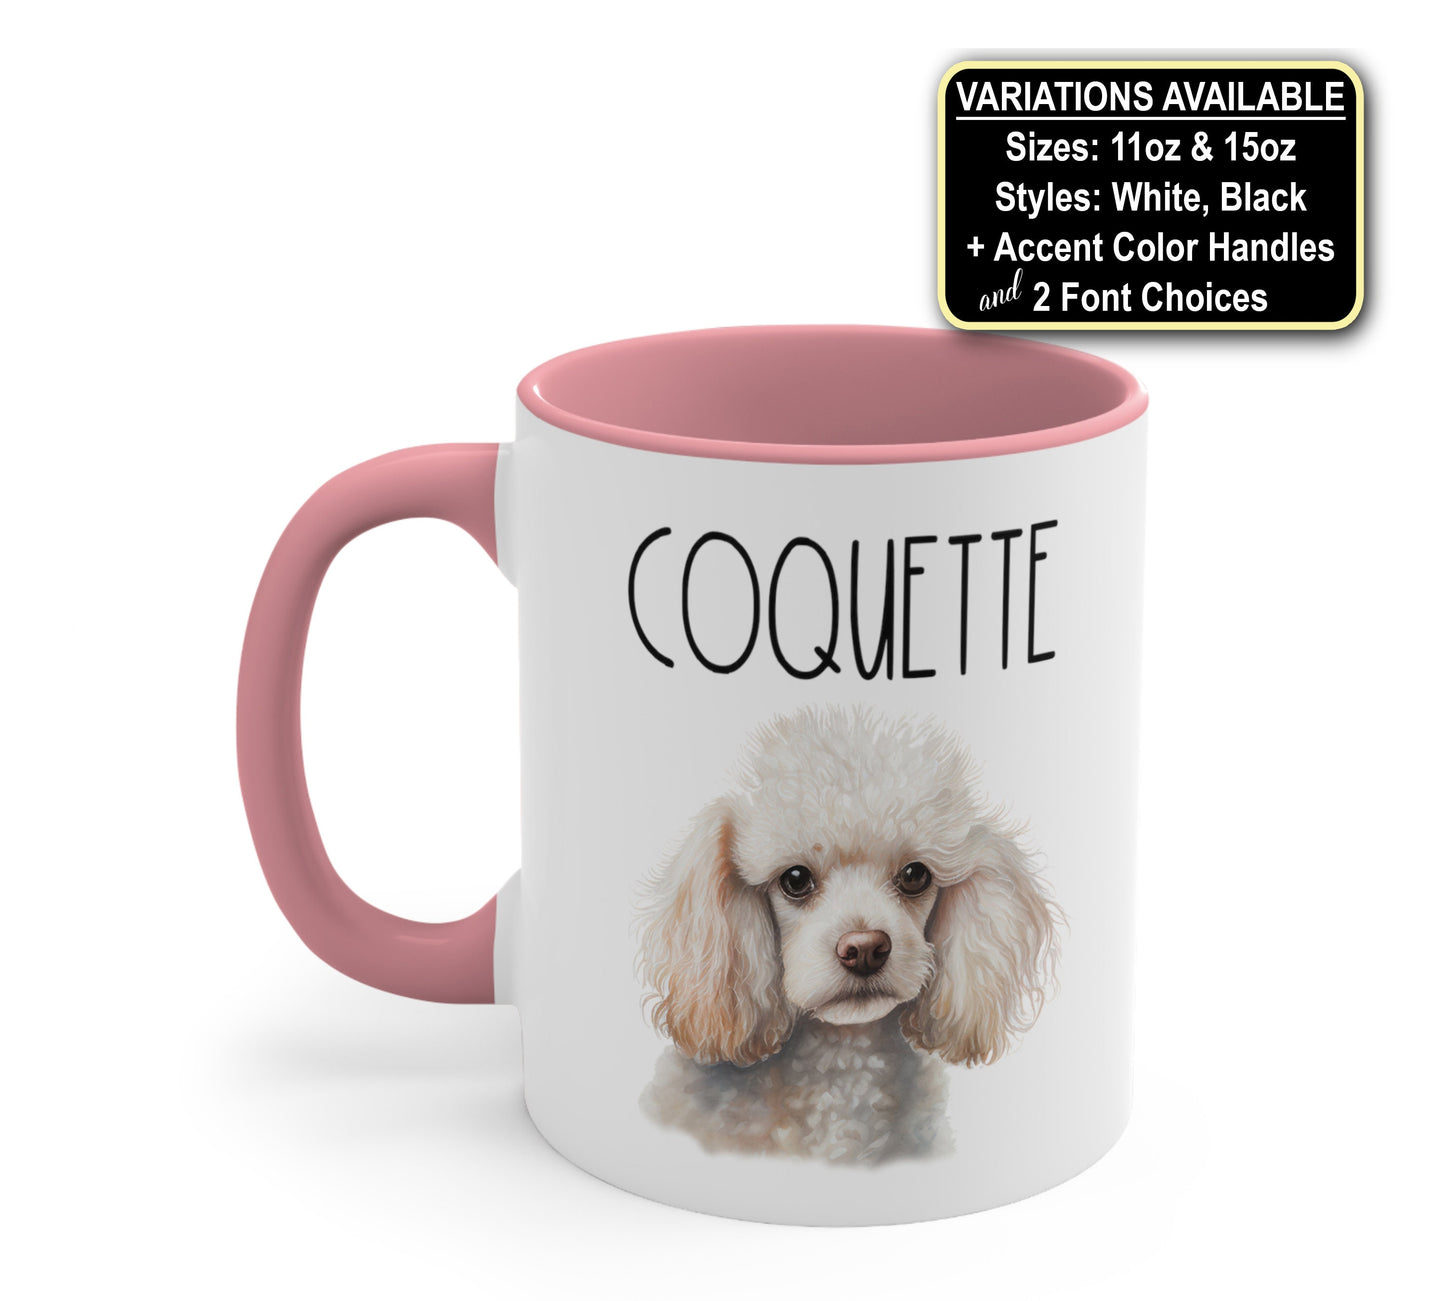 Personalized Poodle Dog Mug, Dog Mom Coffee Mug, Dog Lover Mug, Pet Mug Gift, Dog Coffee Cup Dog Gift, Custom Dog Mug, Dog Mom Birthday Gift